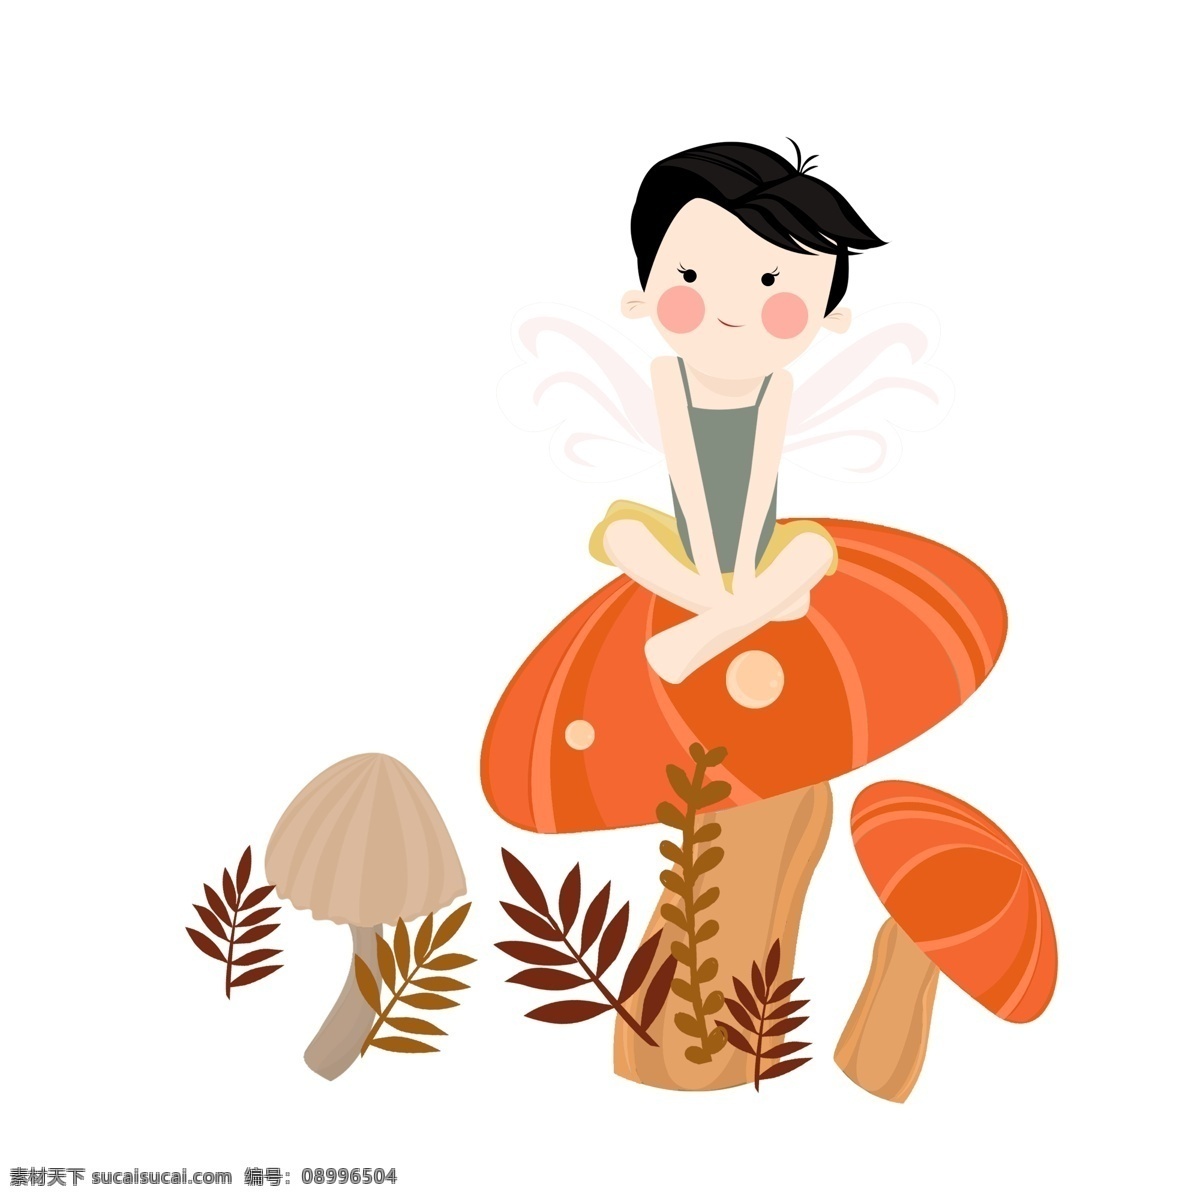 坐在 蘑菇 上 精灵 女孩 卡通 可爱 森林 童话风 插画元素 人物设计